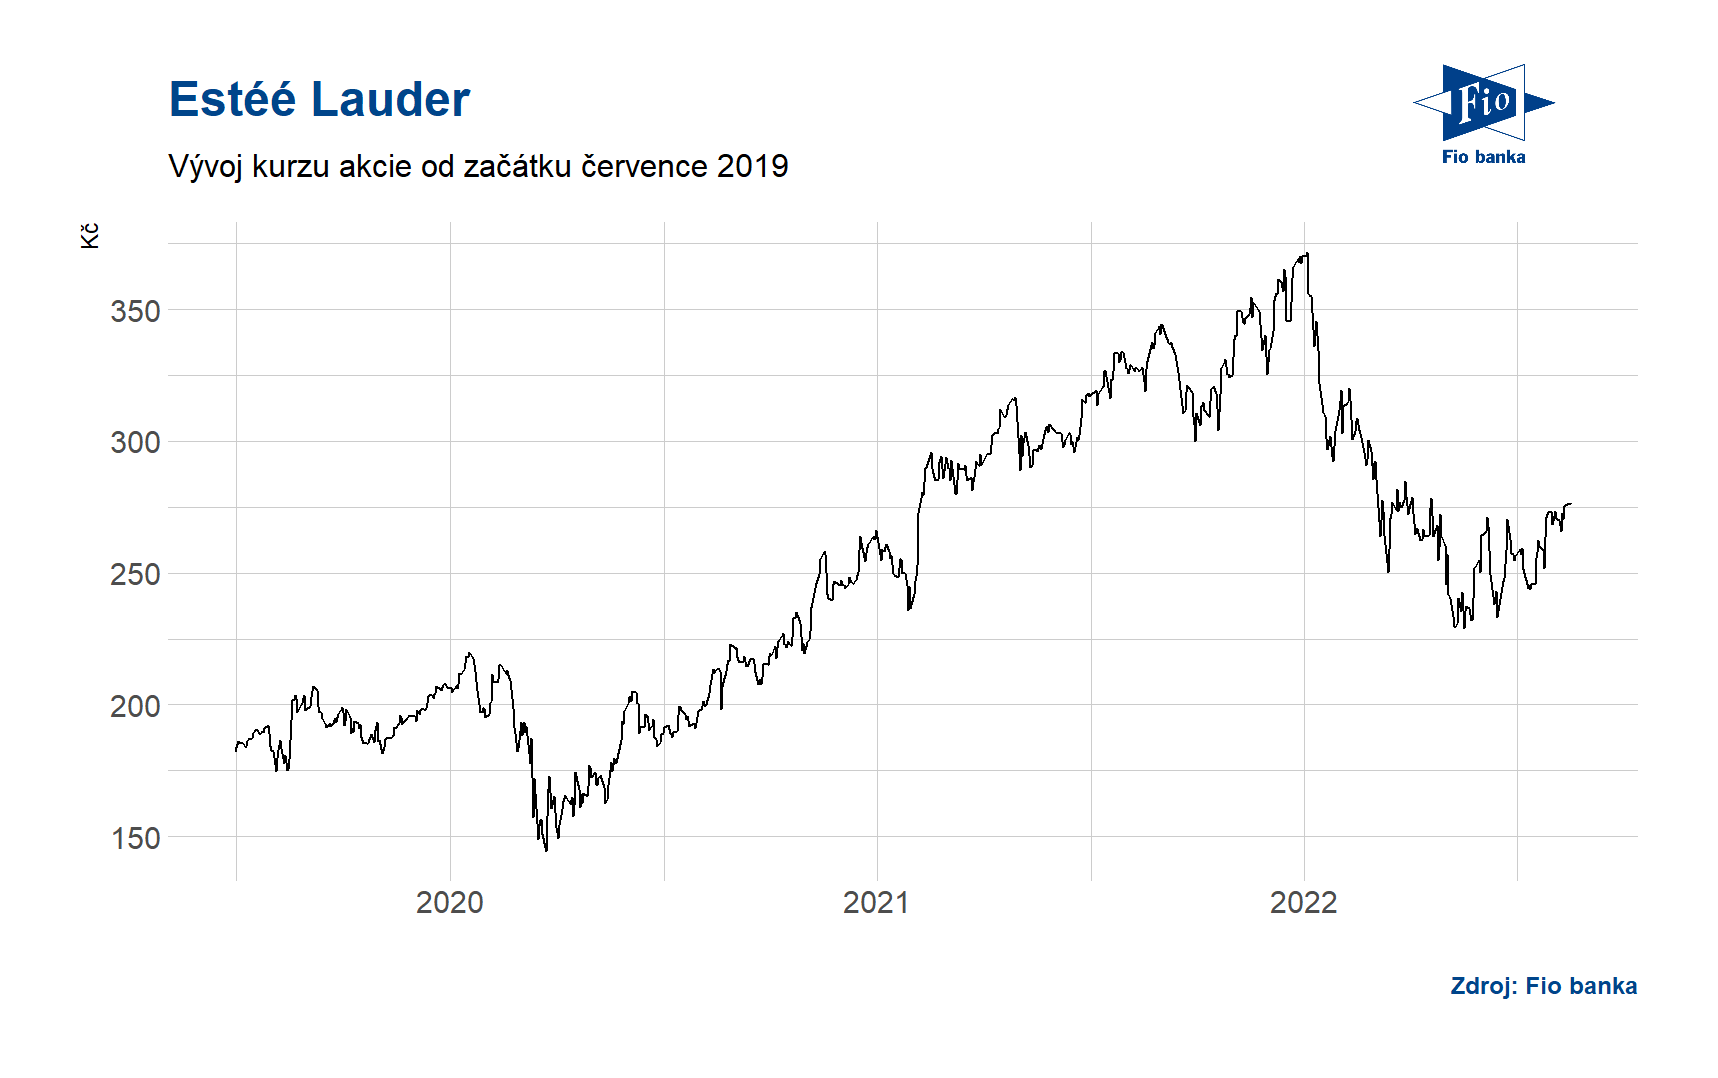 Vývoj ceny akcií společnosti Estéé Lauder